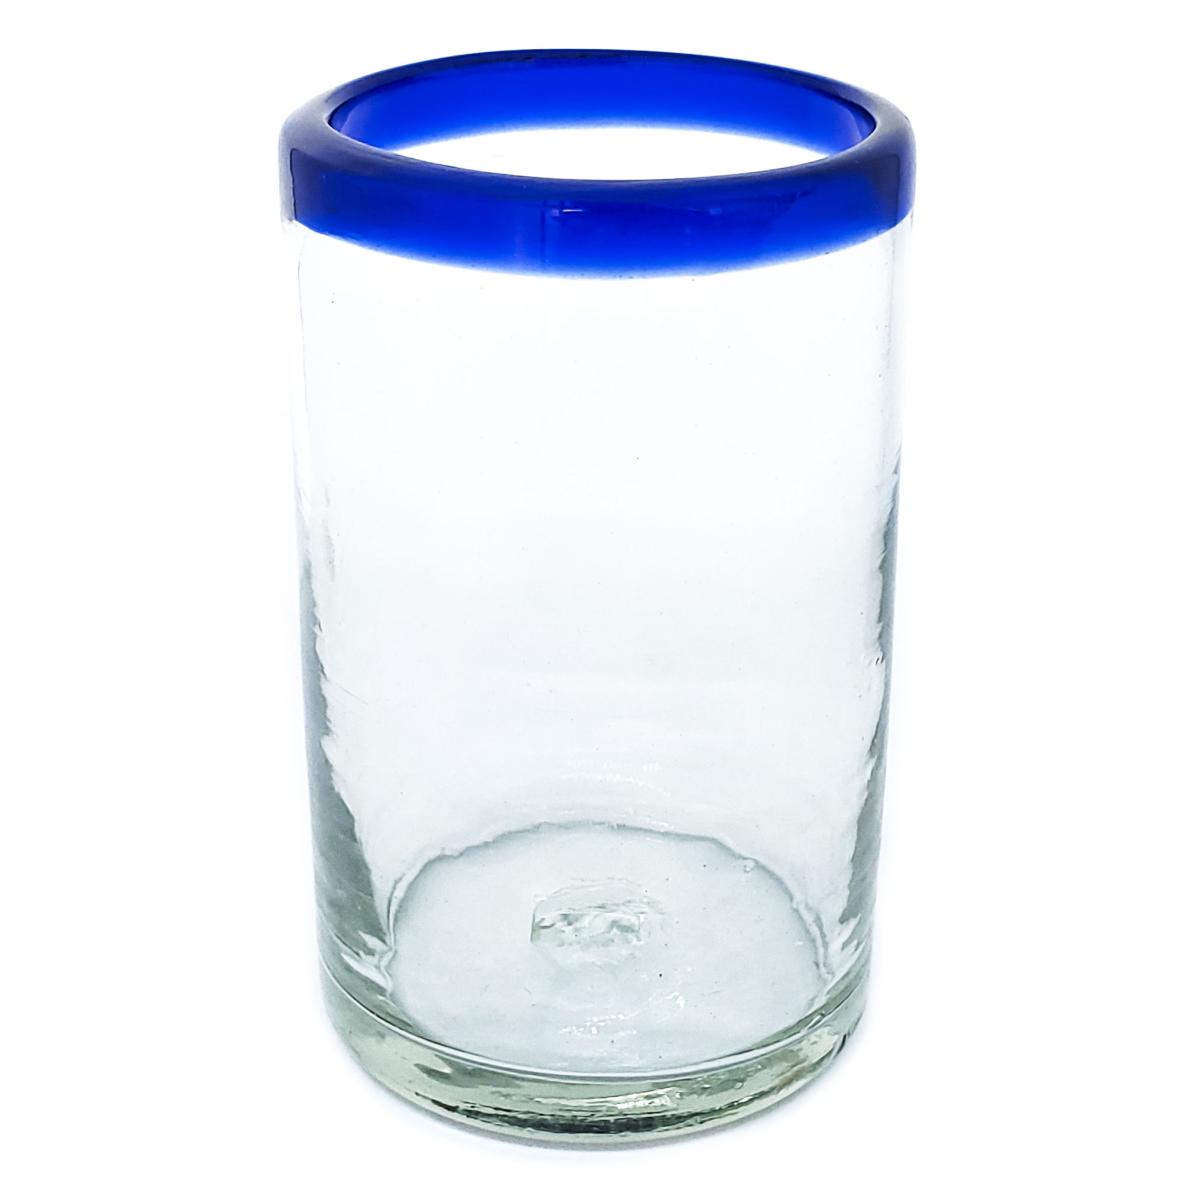 Borde Azul Cobalto / Juego de 6 vasos grandes con borde azul cobalto / stos artesanales vasos le darn un toque clsico a su bebida favorita.